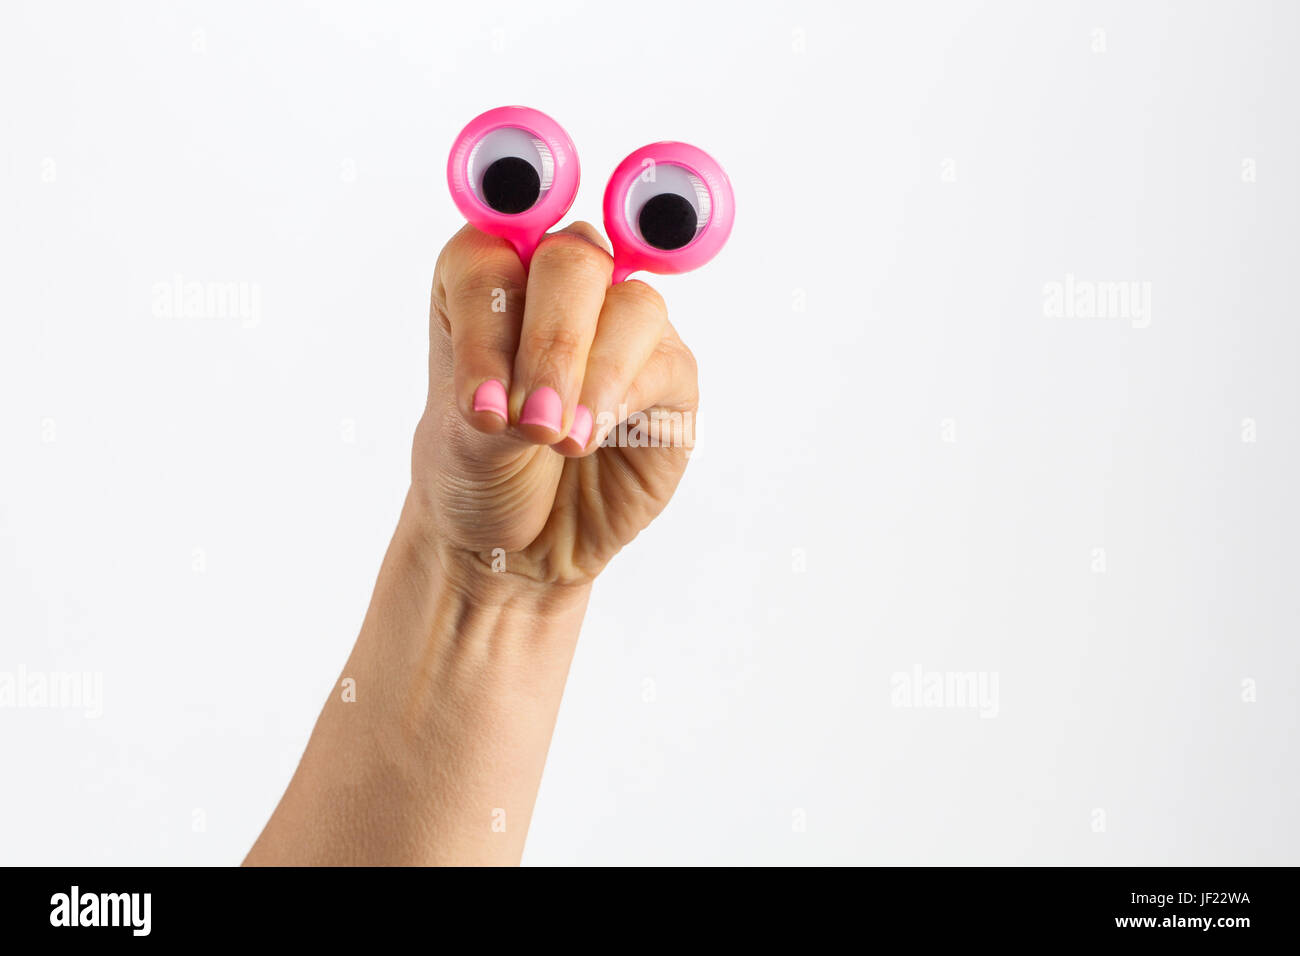 Lustiger Charakter Kreatur suchen Betrachtung und nachdenklich dargestellt mit weiblichen Hand und Googly Augen. Isoliert auf weiss mit Textfreiraum Stockfoto